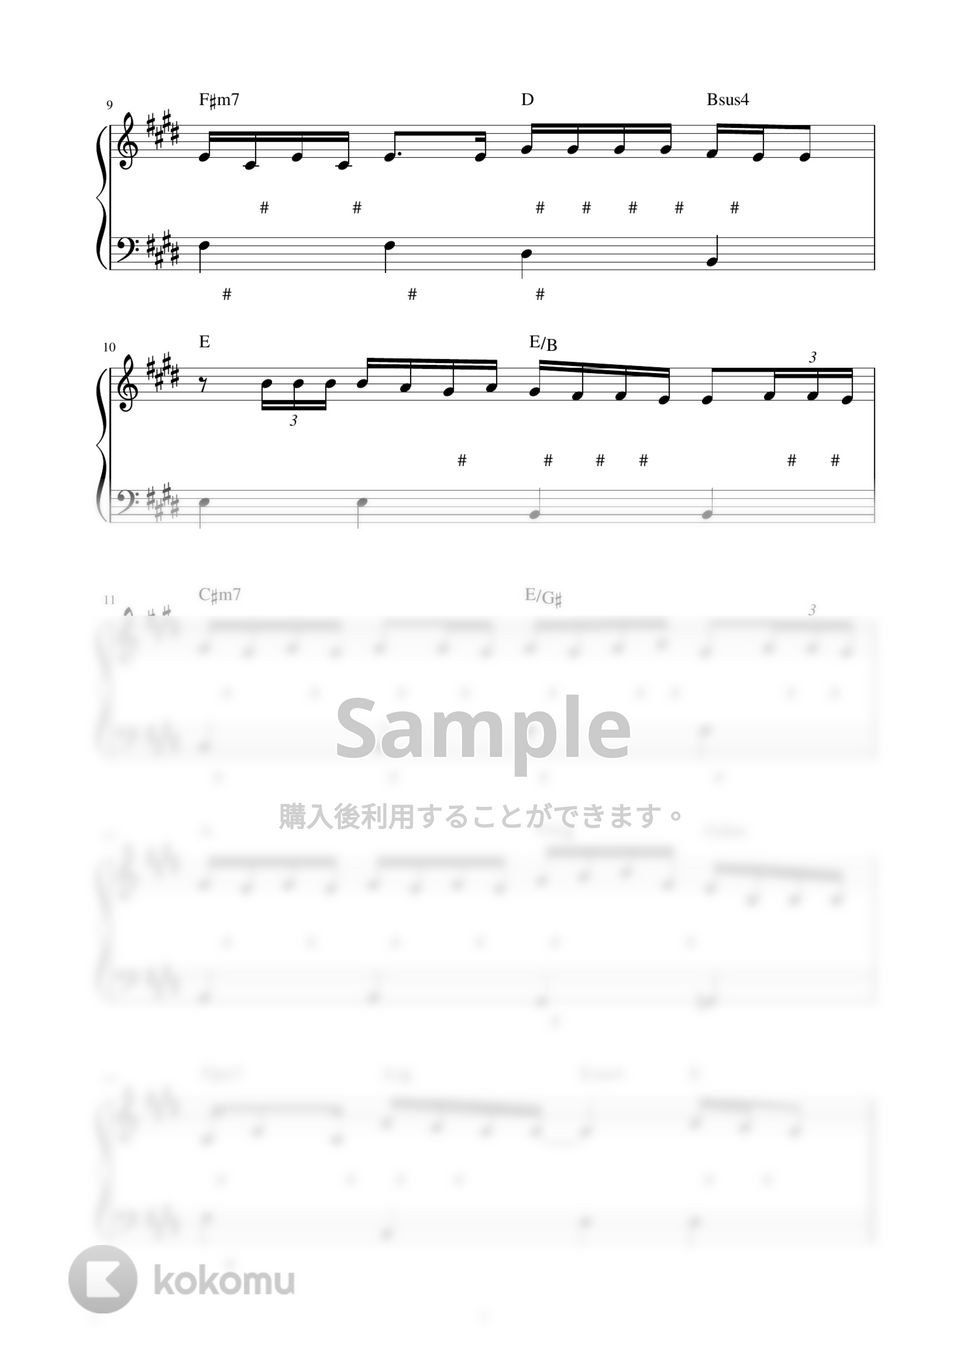 wacci - 恋だろ (ピアノ楽譜 / かんたん両手 / 歌詞付き / ドレミ付き / 初心者向き) by piano.tokyo